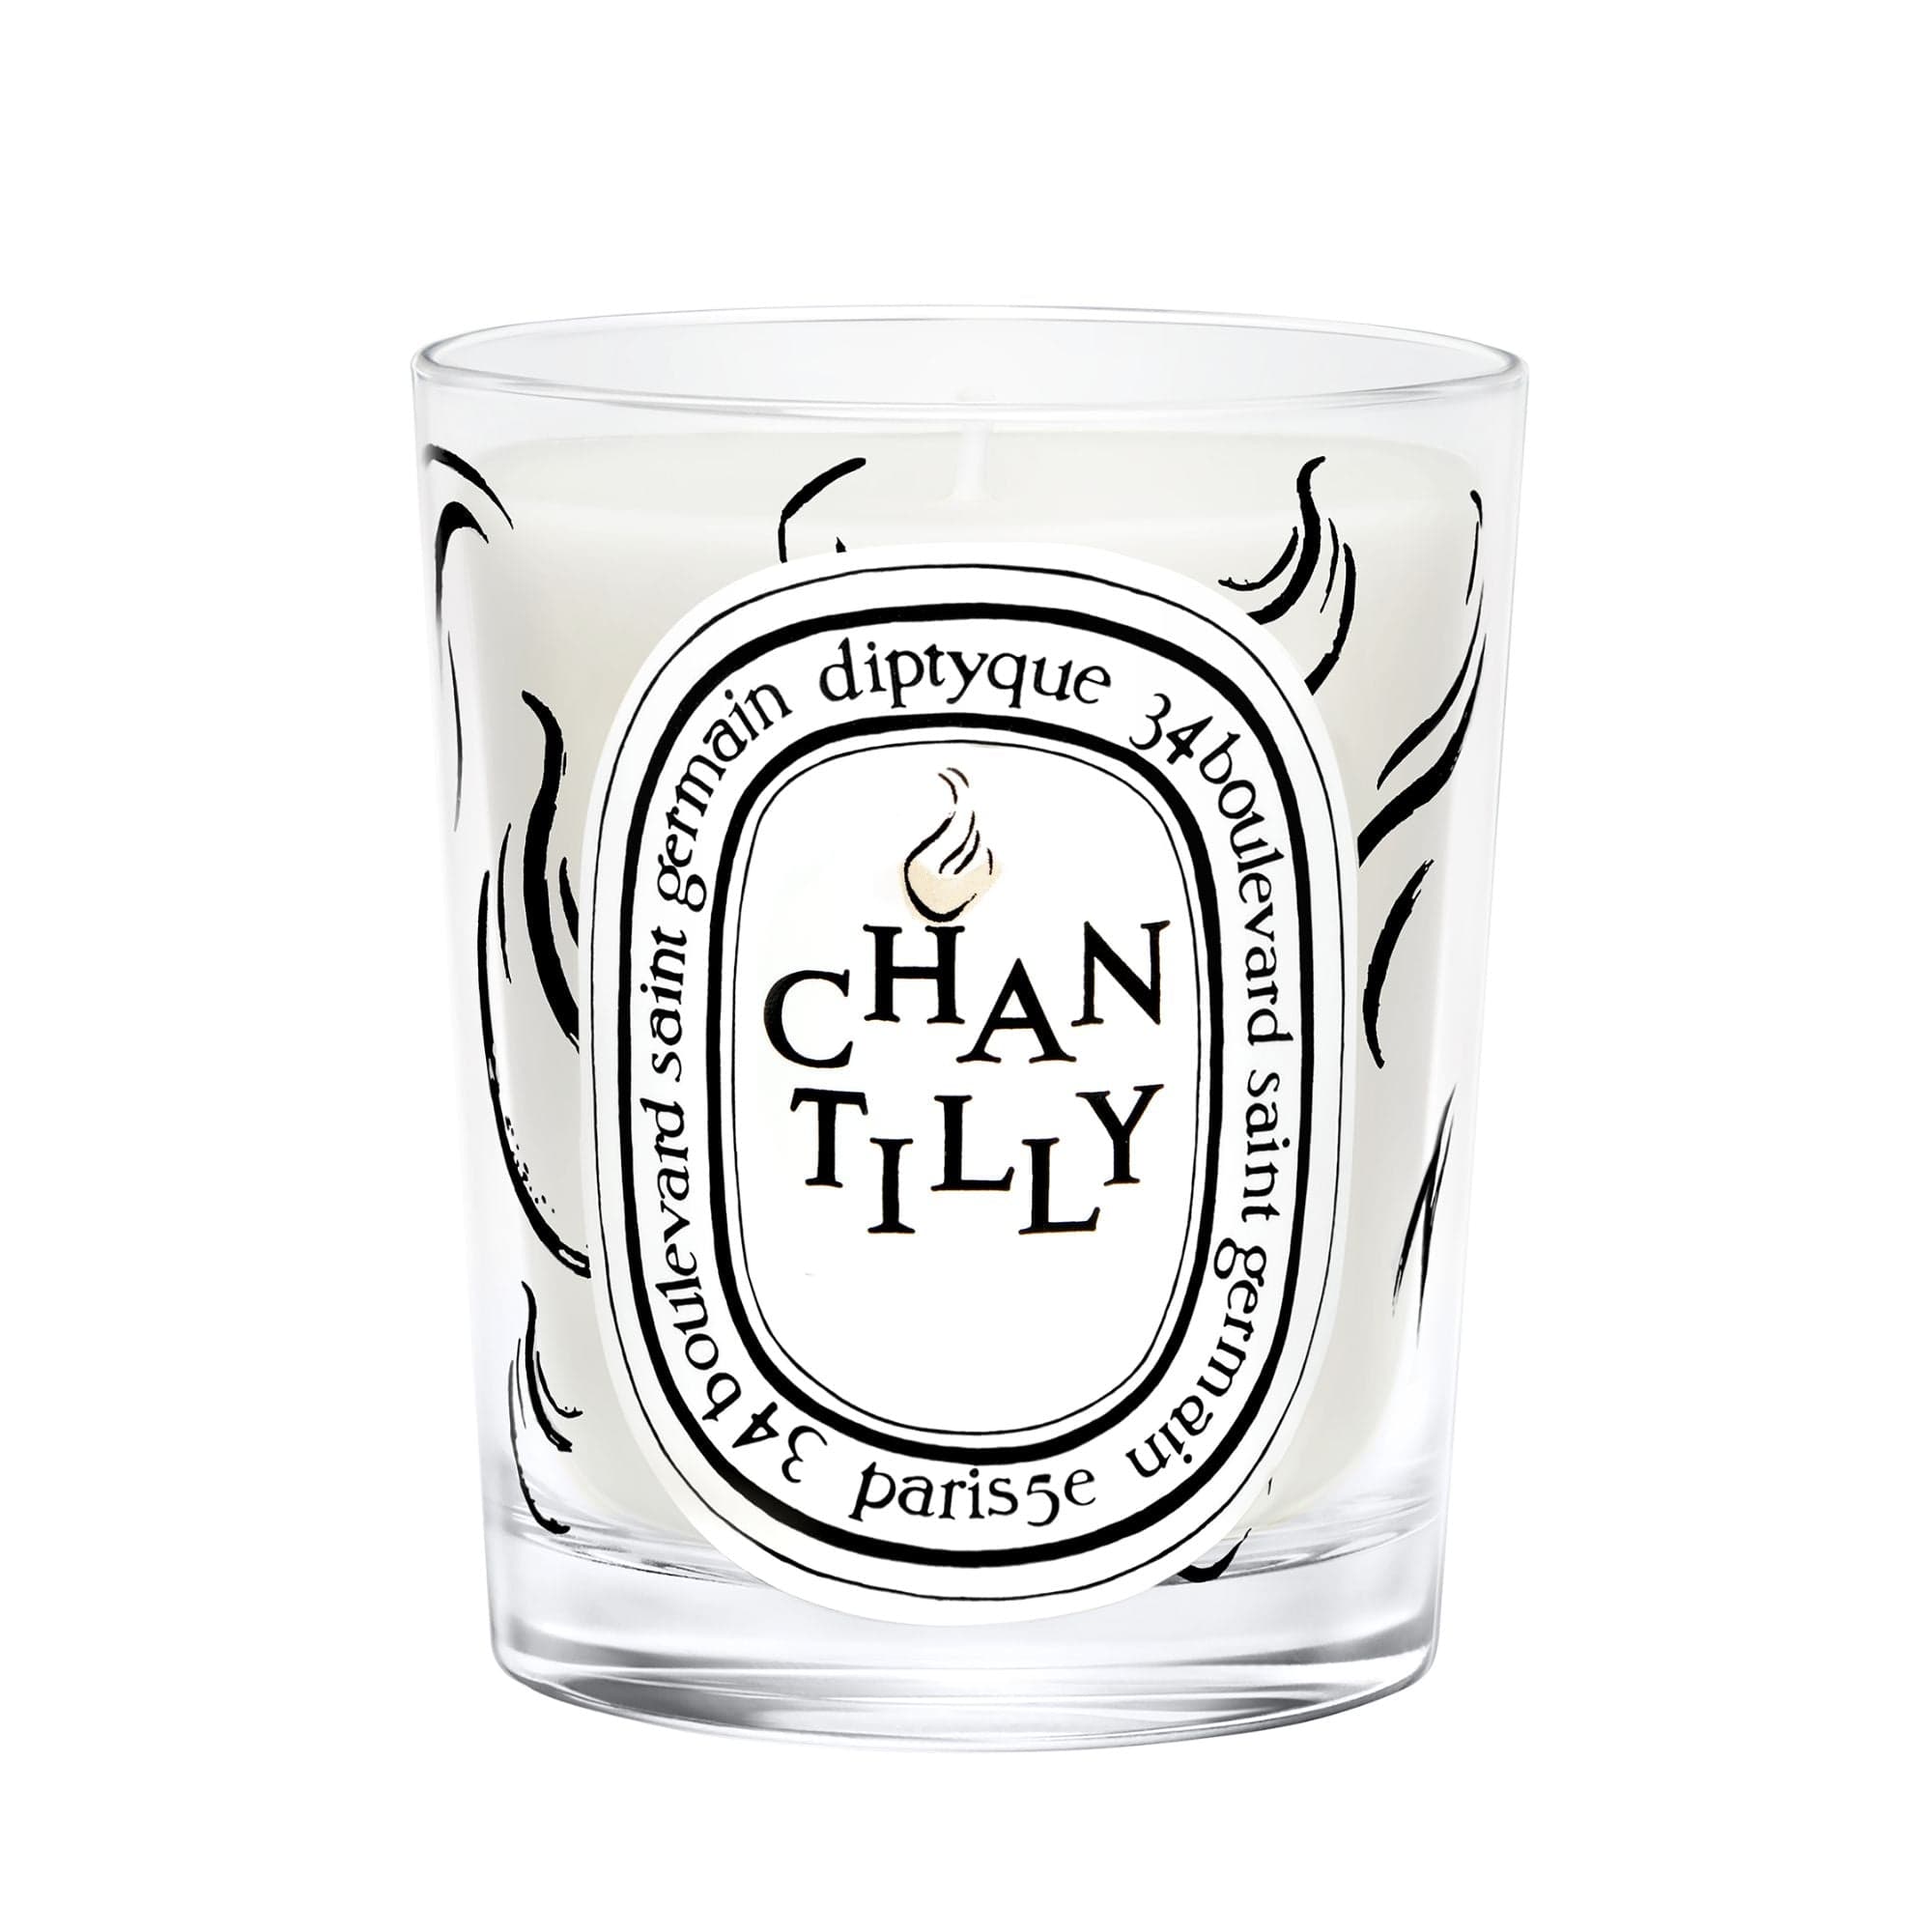 Chantilly Diptyque Vela perfumada edición limitada